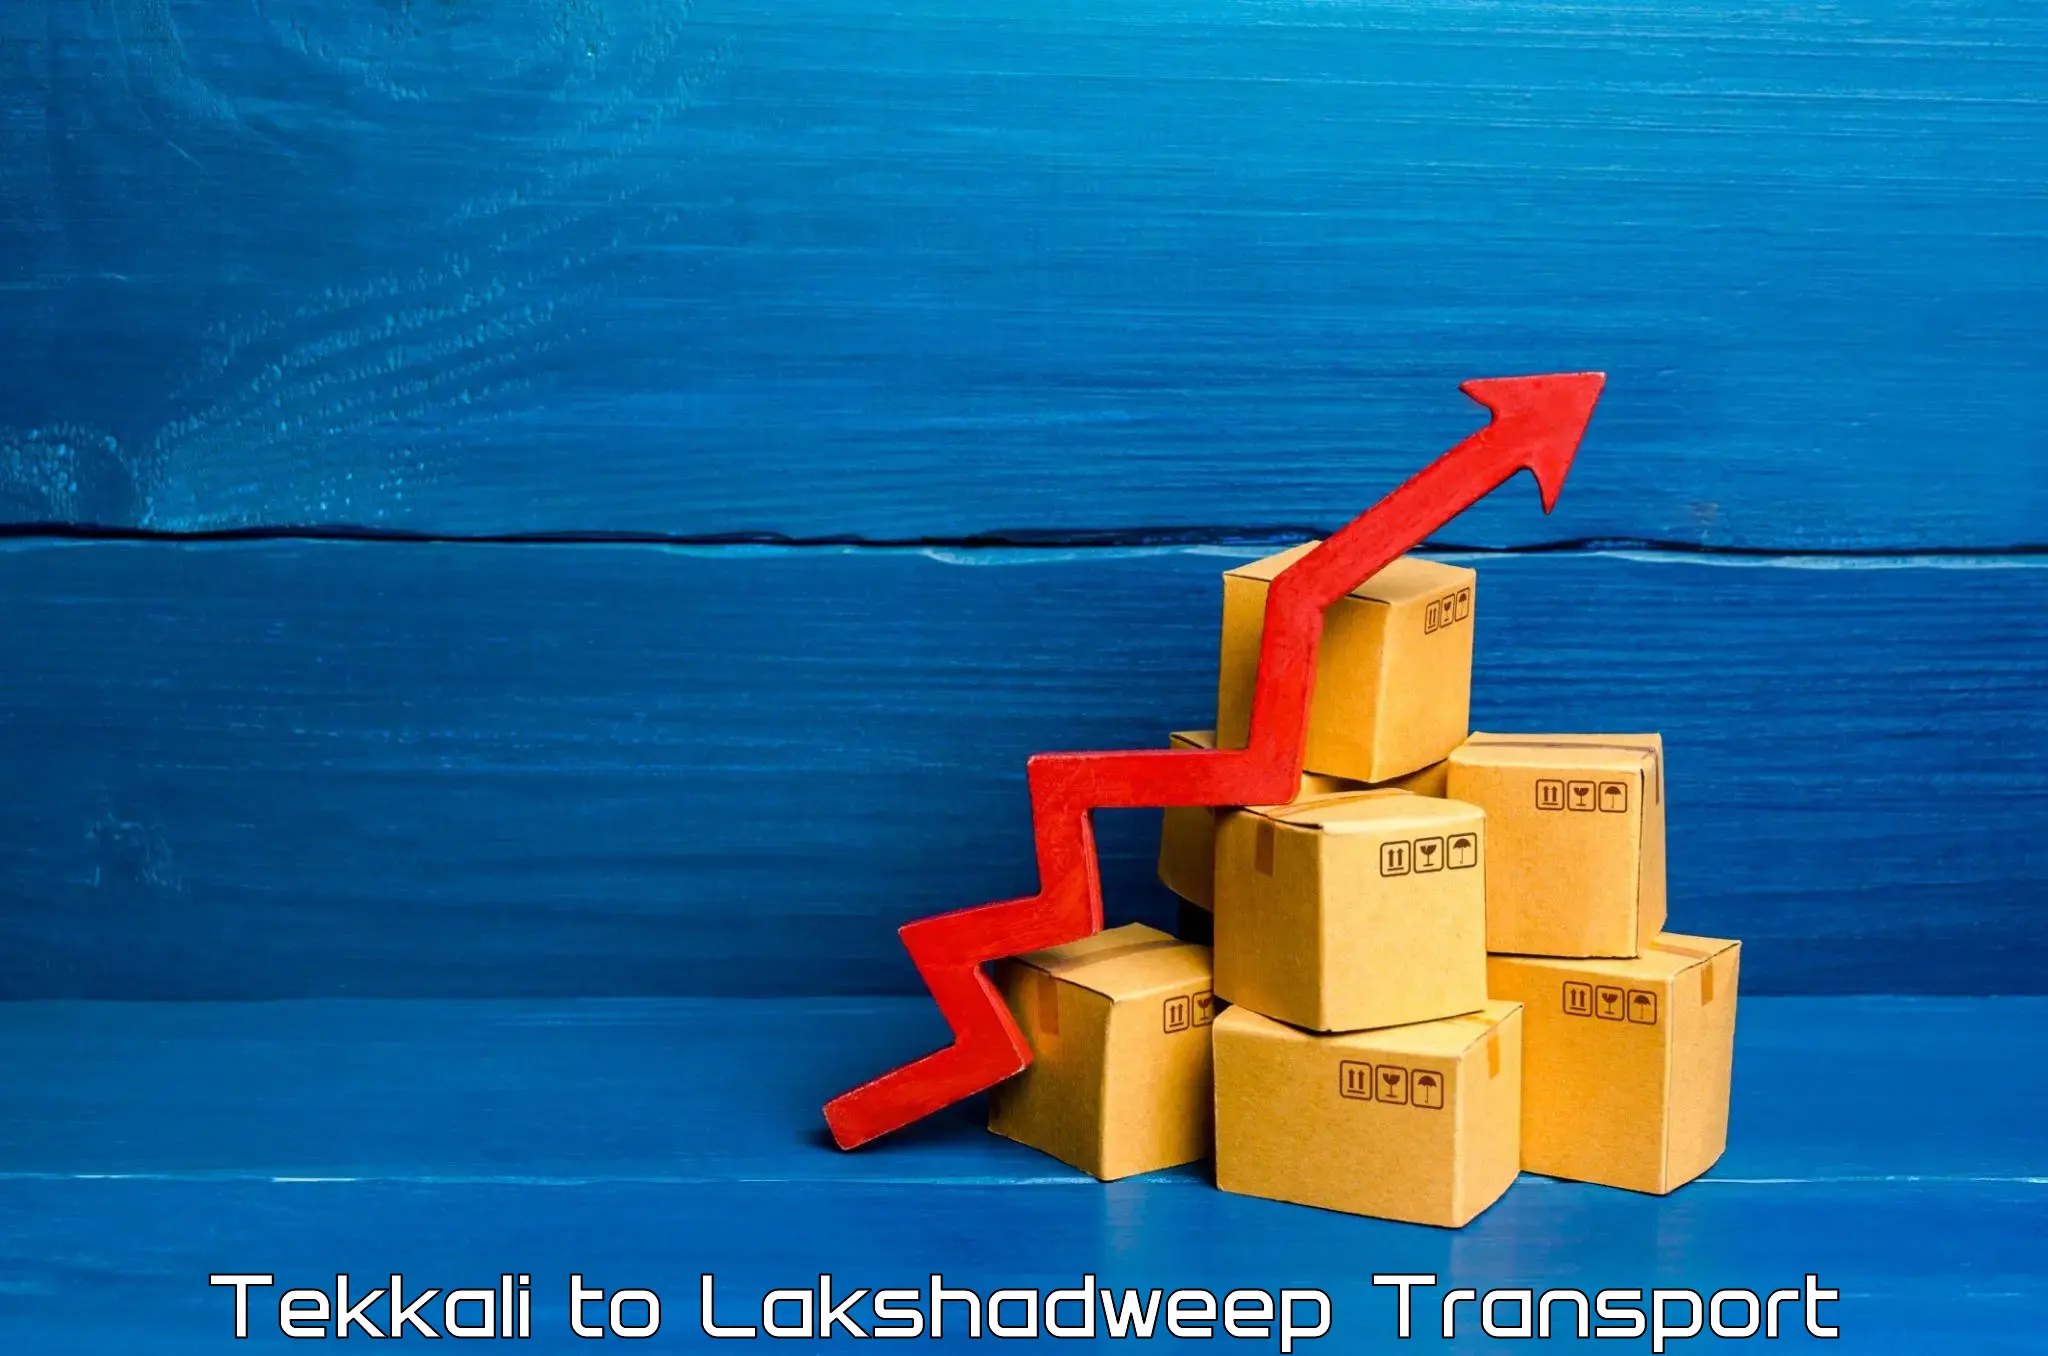 Transportation services Tekkali to Lakshadweep